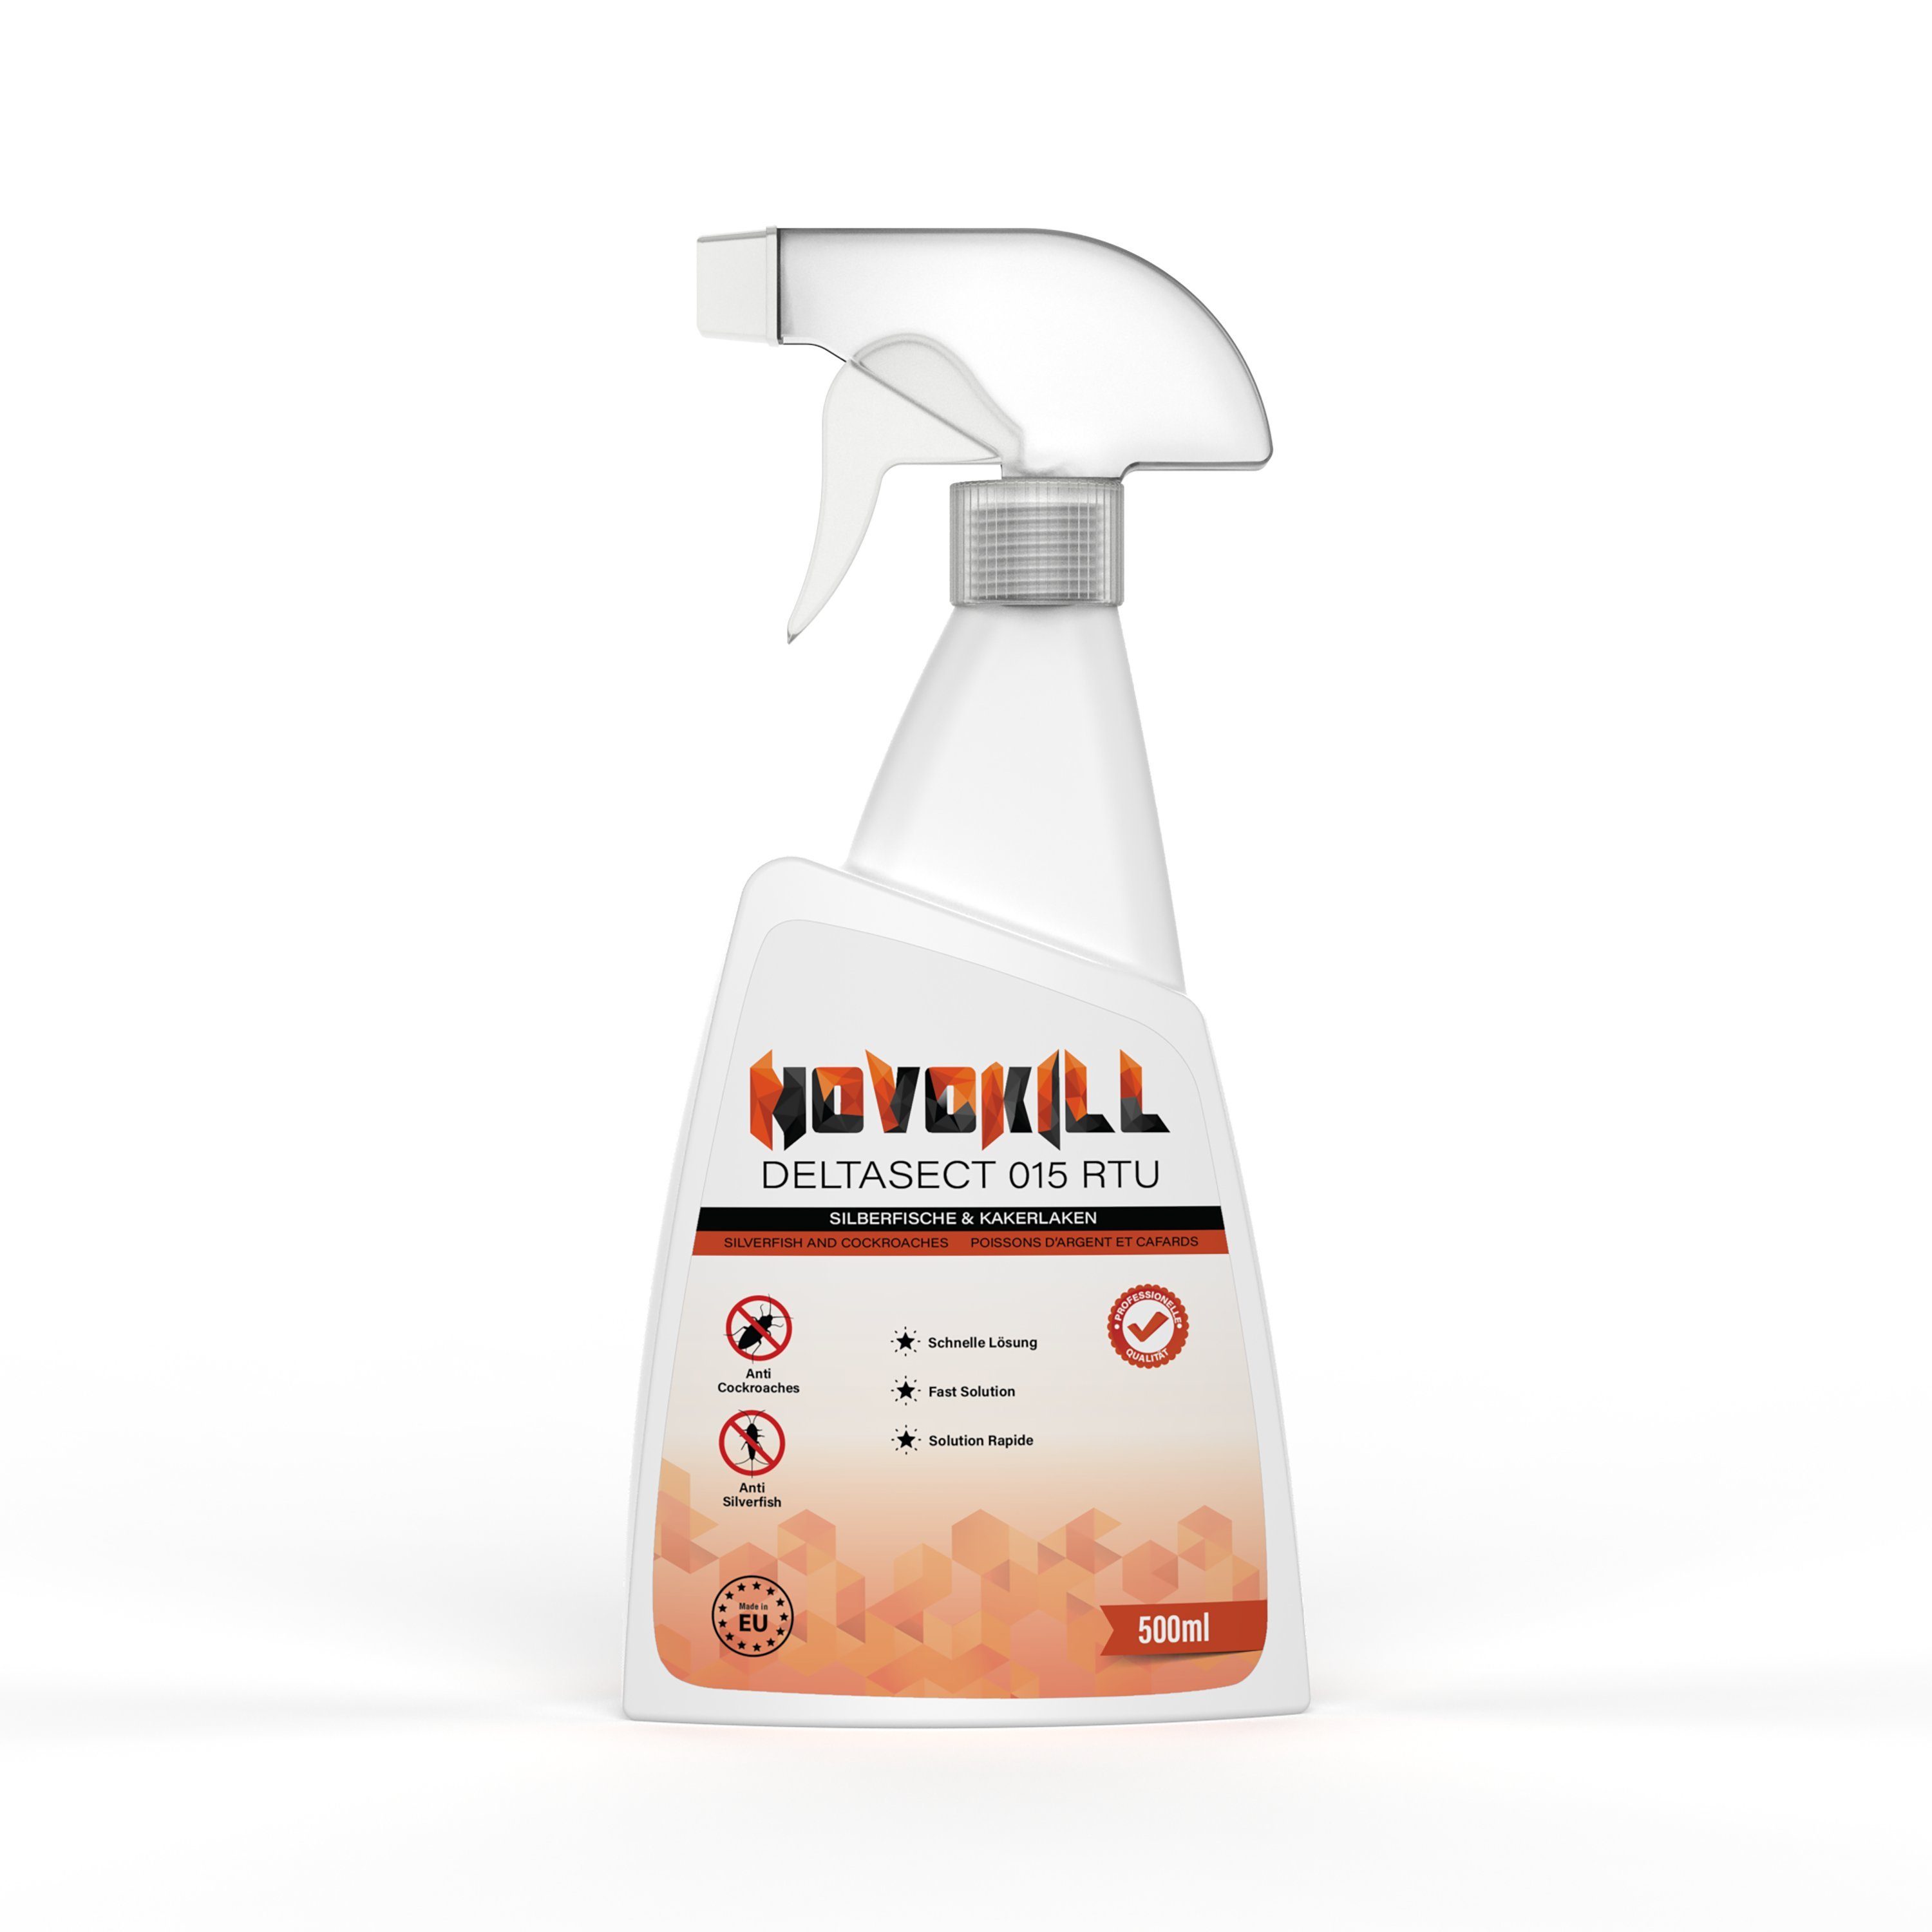 Novokill Insektenspray Deltasect Silberfische & Schabenspray, 500 ml, mit Langzeiteffekt, gebrauchsfertig & geruchsneutral